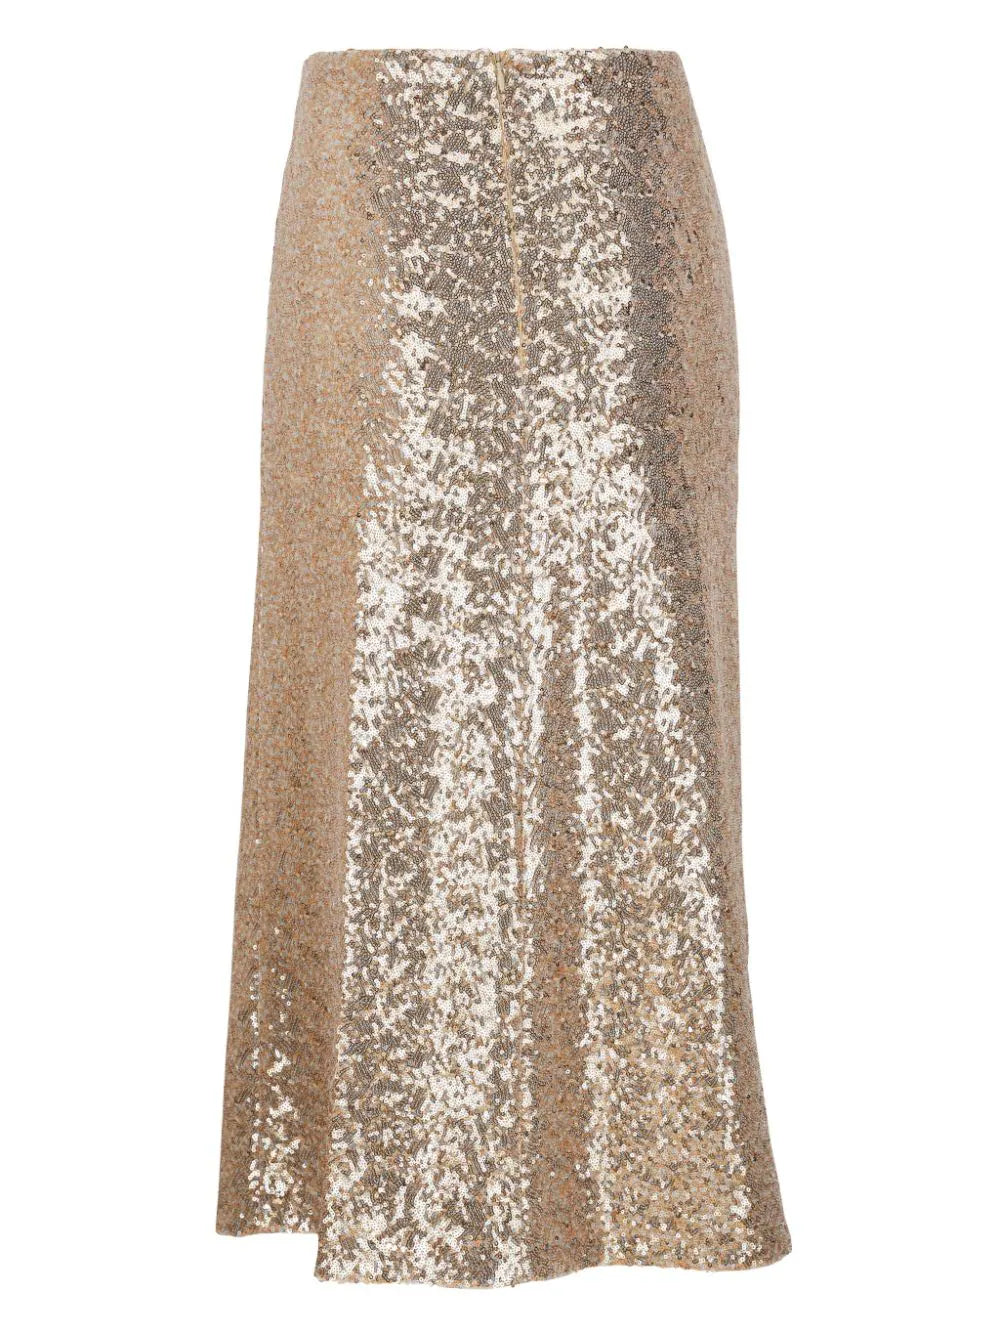 SHIMMERING COMFORT skirt, colorful sparkle